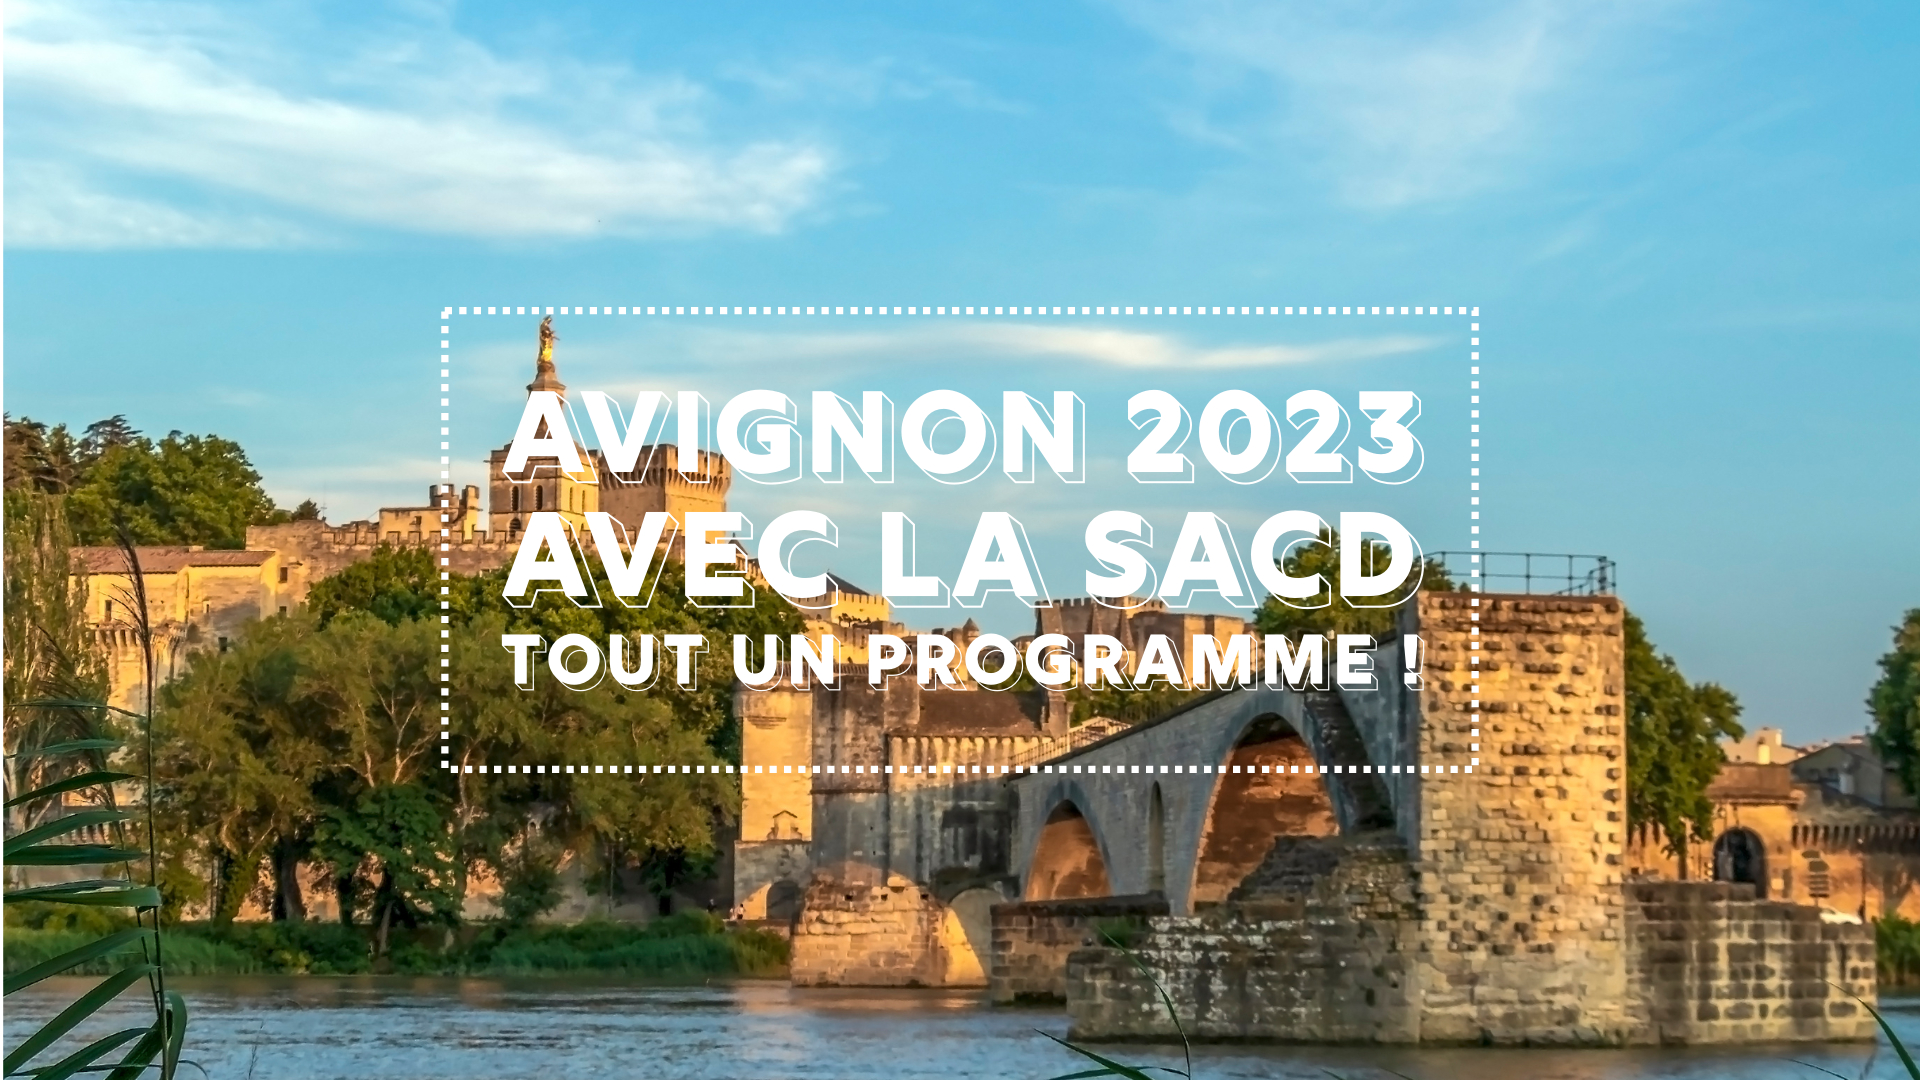 avignon 2023 SACD programme